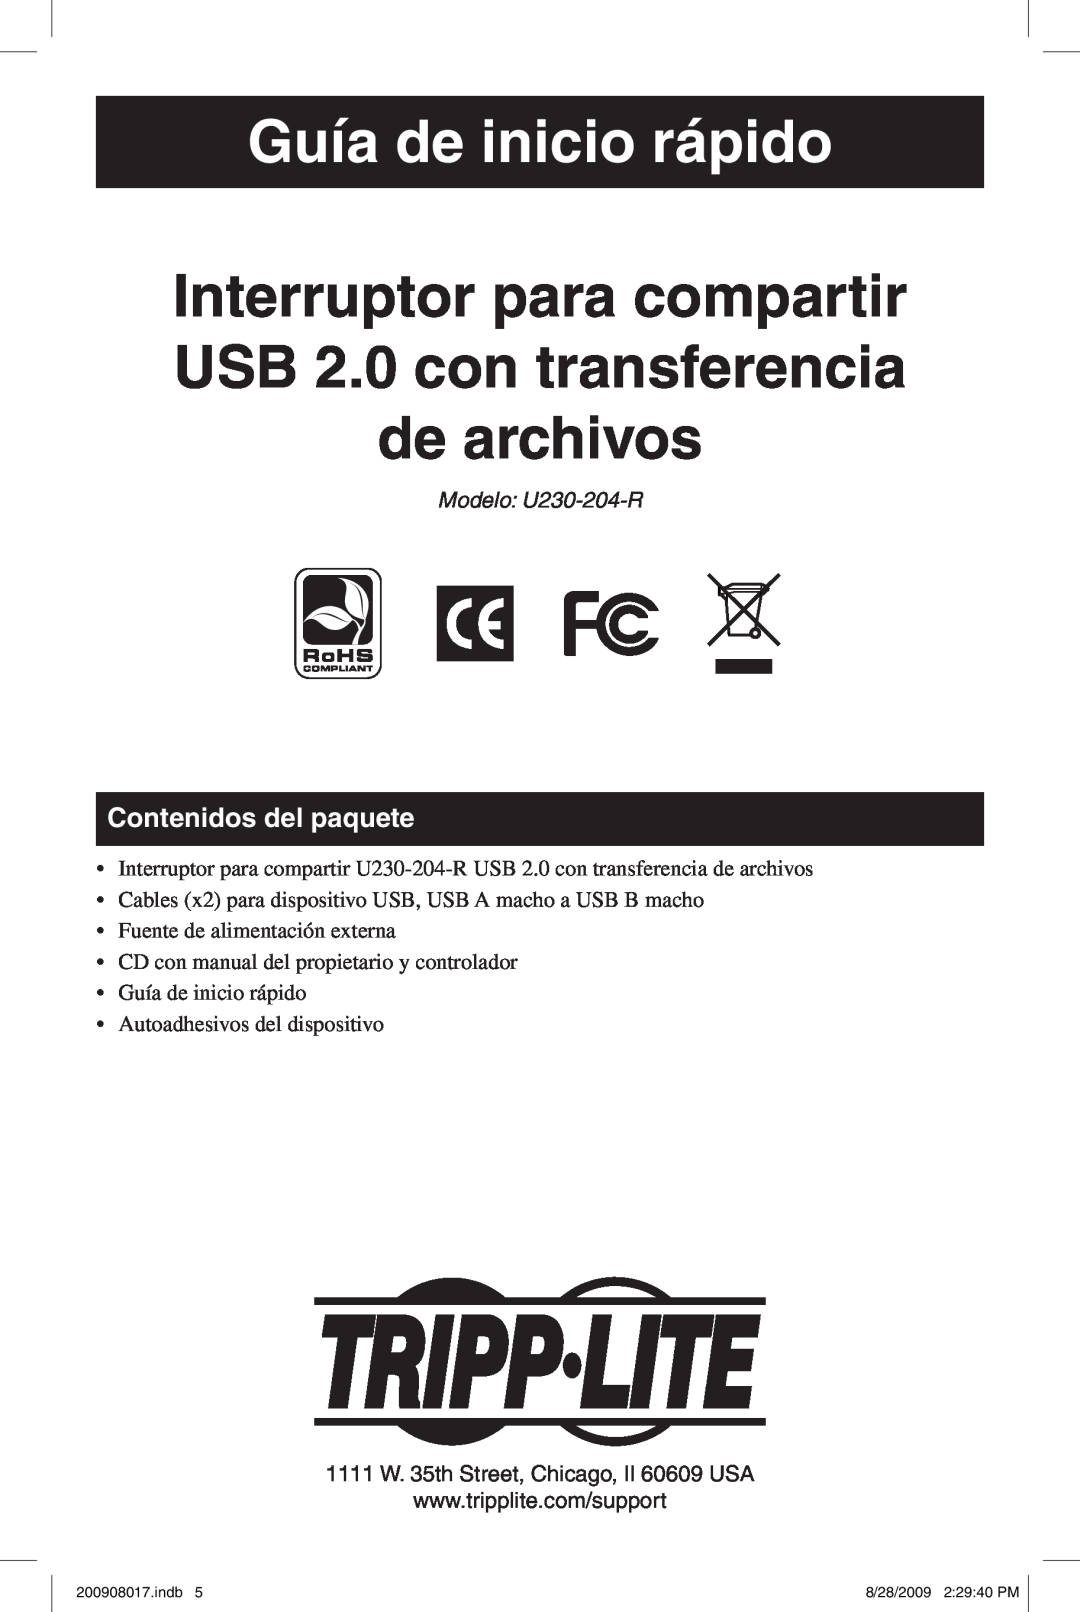 Tripp Lite U230-204-R warranty Guía de inicio rápido, Interruptor para compartir USB 2.0 con transferencia de archivos 